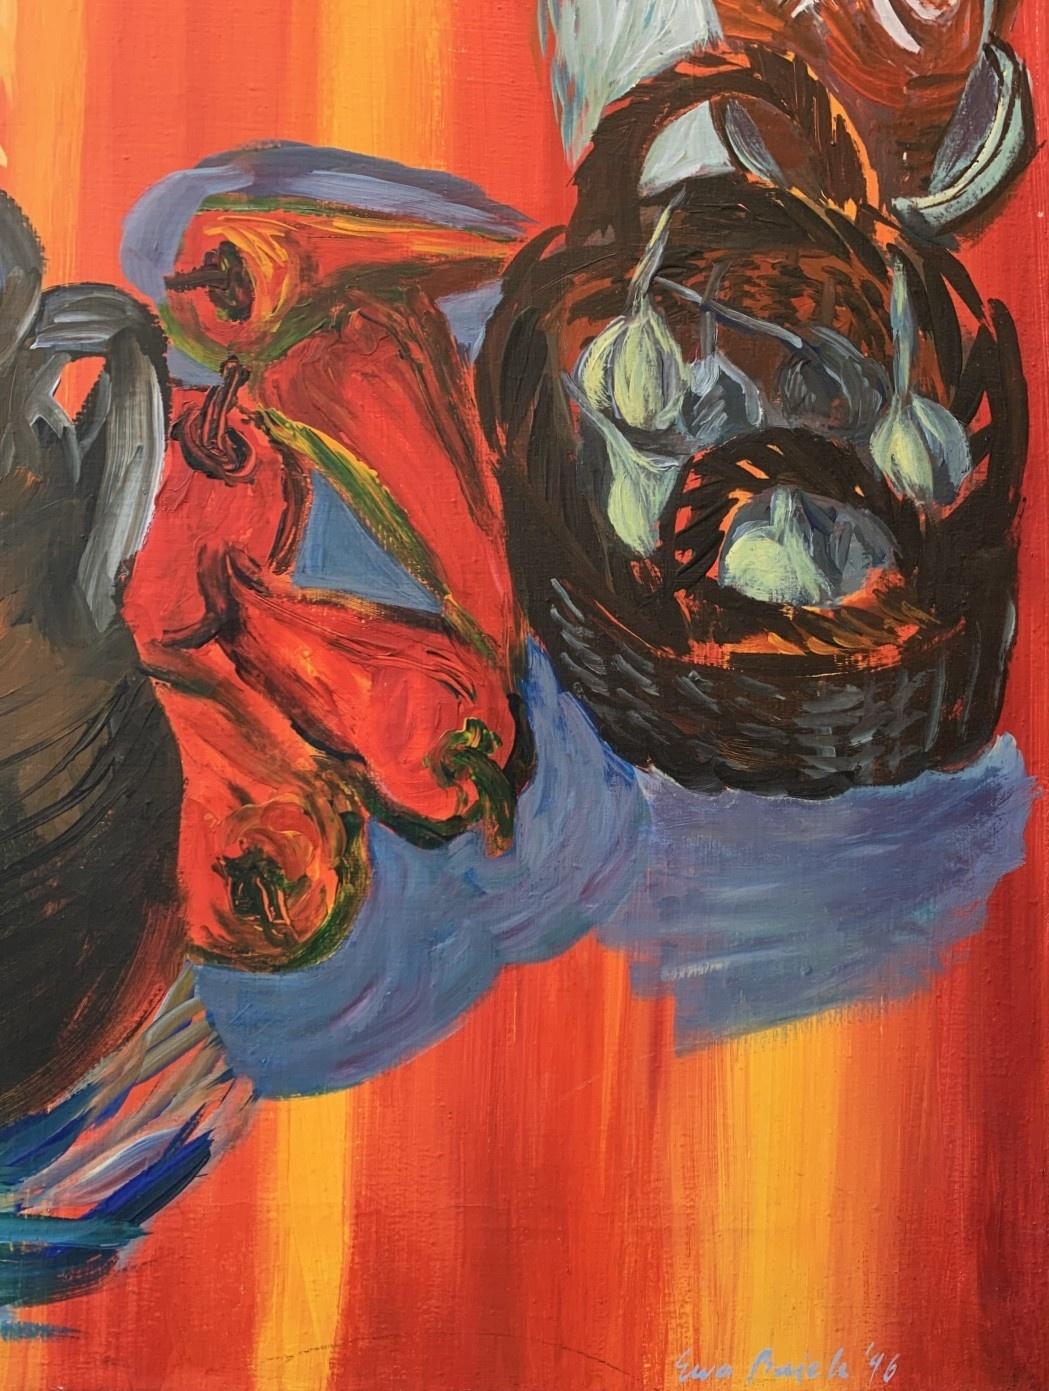 Huile sur toile colorée du 20e siècle de l'artiste polonaise Ewa Bajek. La peinture représente des natures mortes avec des légumes, des crânes d'animaux, du verre et des plantes dans des pots. Les couleurs sont éclatantes et l'orange domine toute la